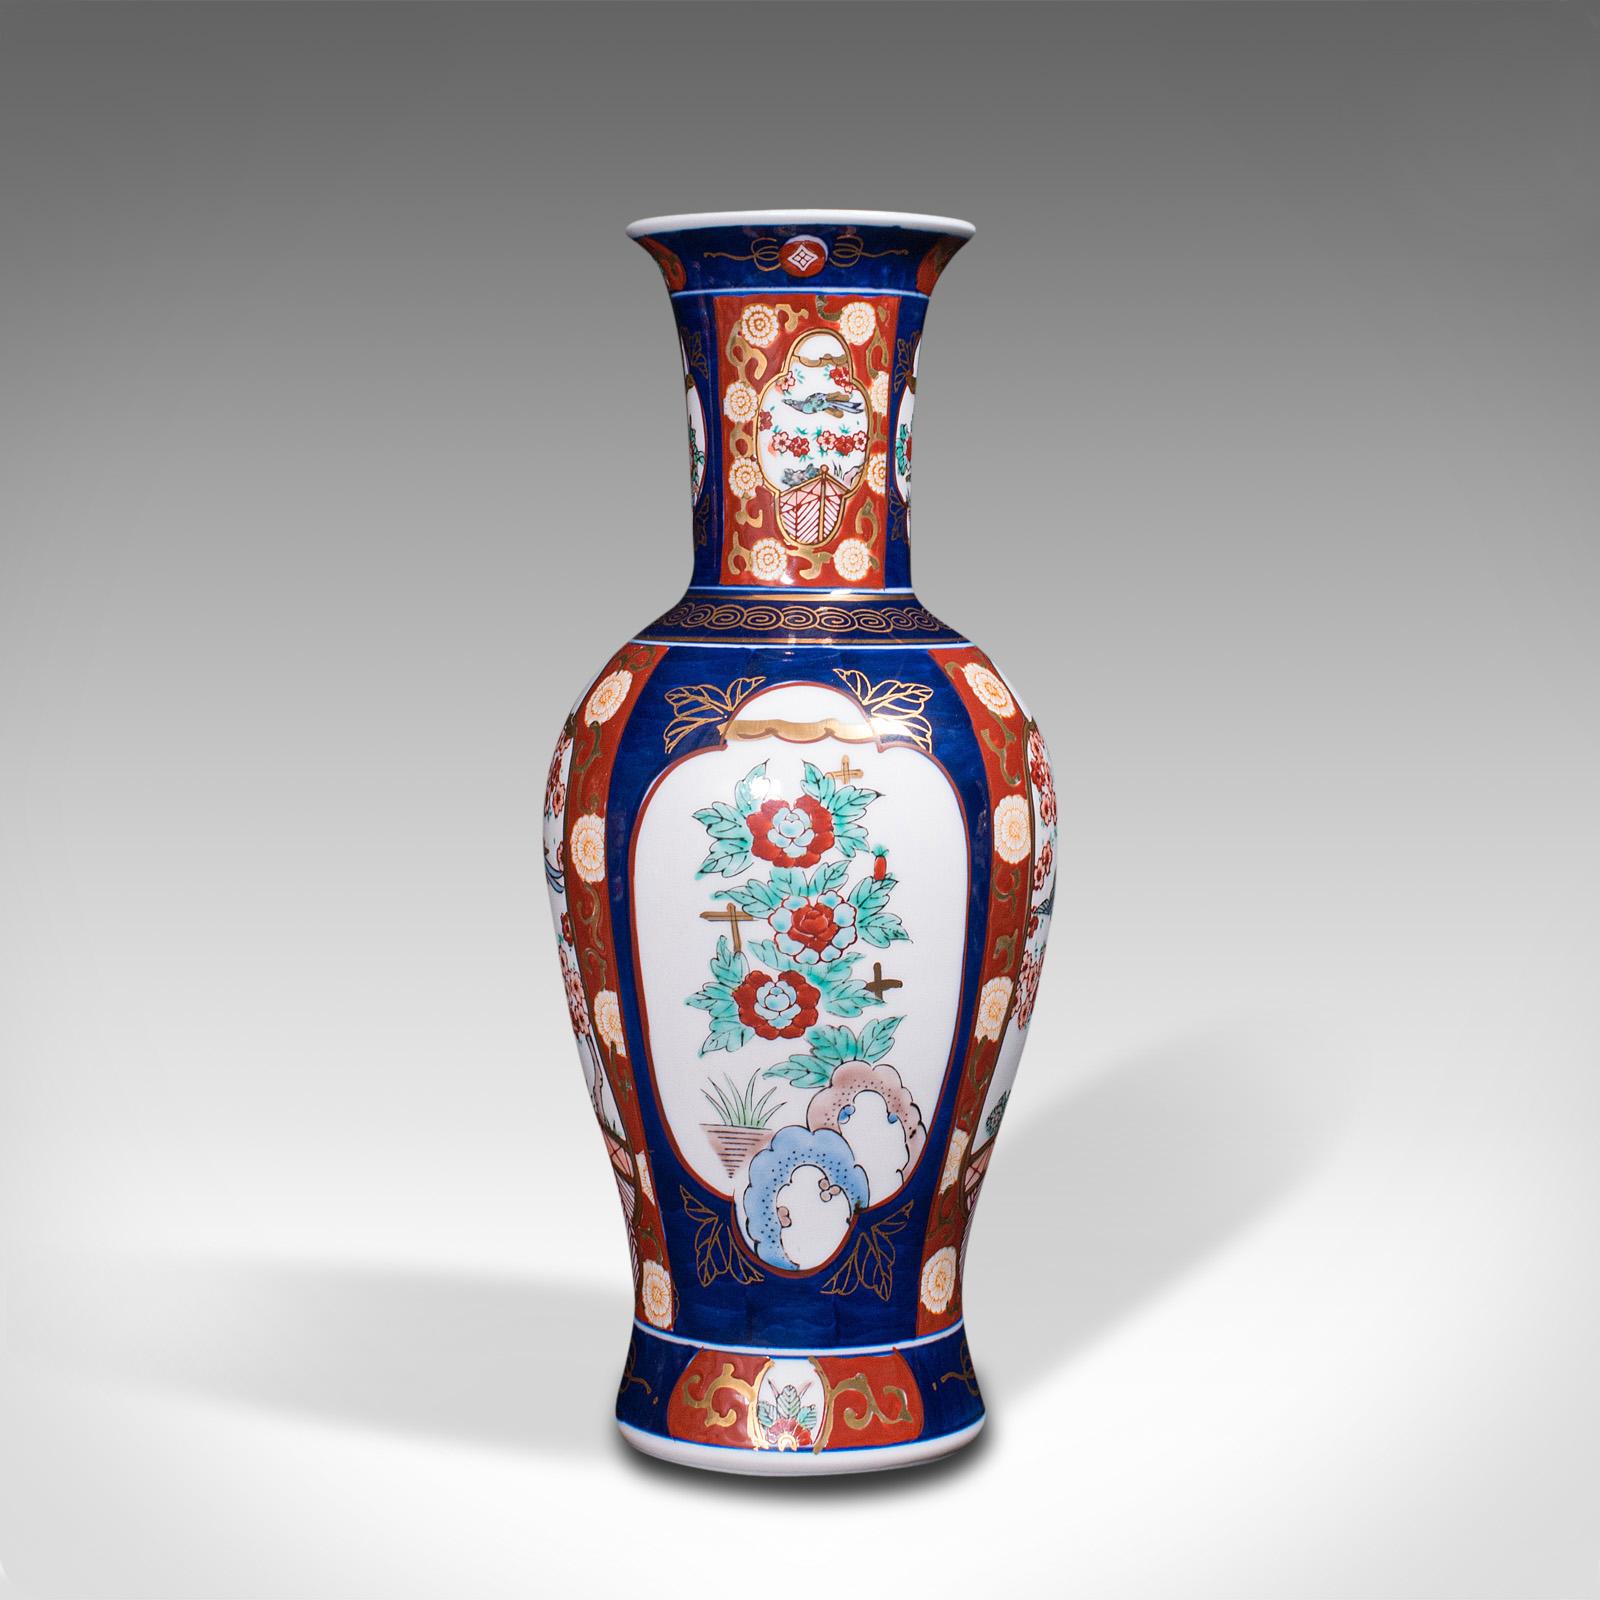 Pair of Vintage Flower Vases, Chinese, Display Urn, Imari Revival, Late 20th.C 1